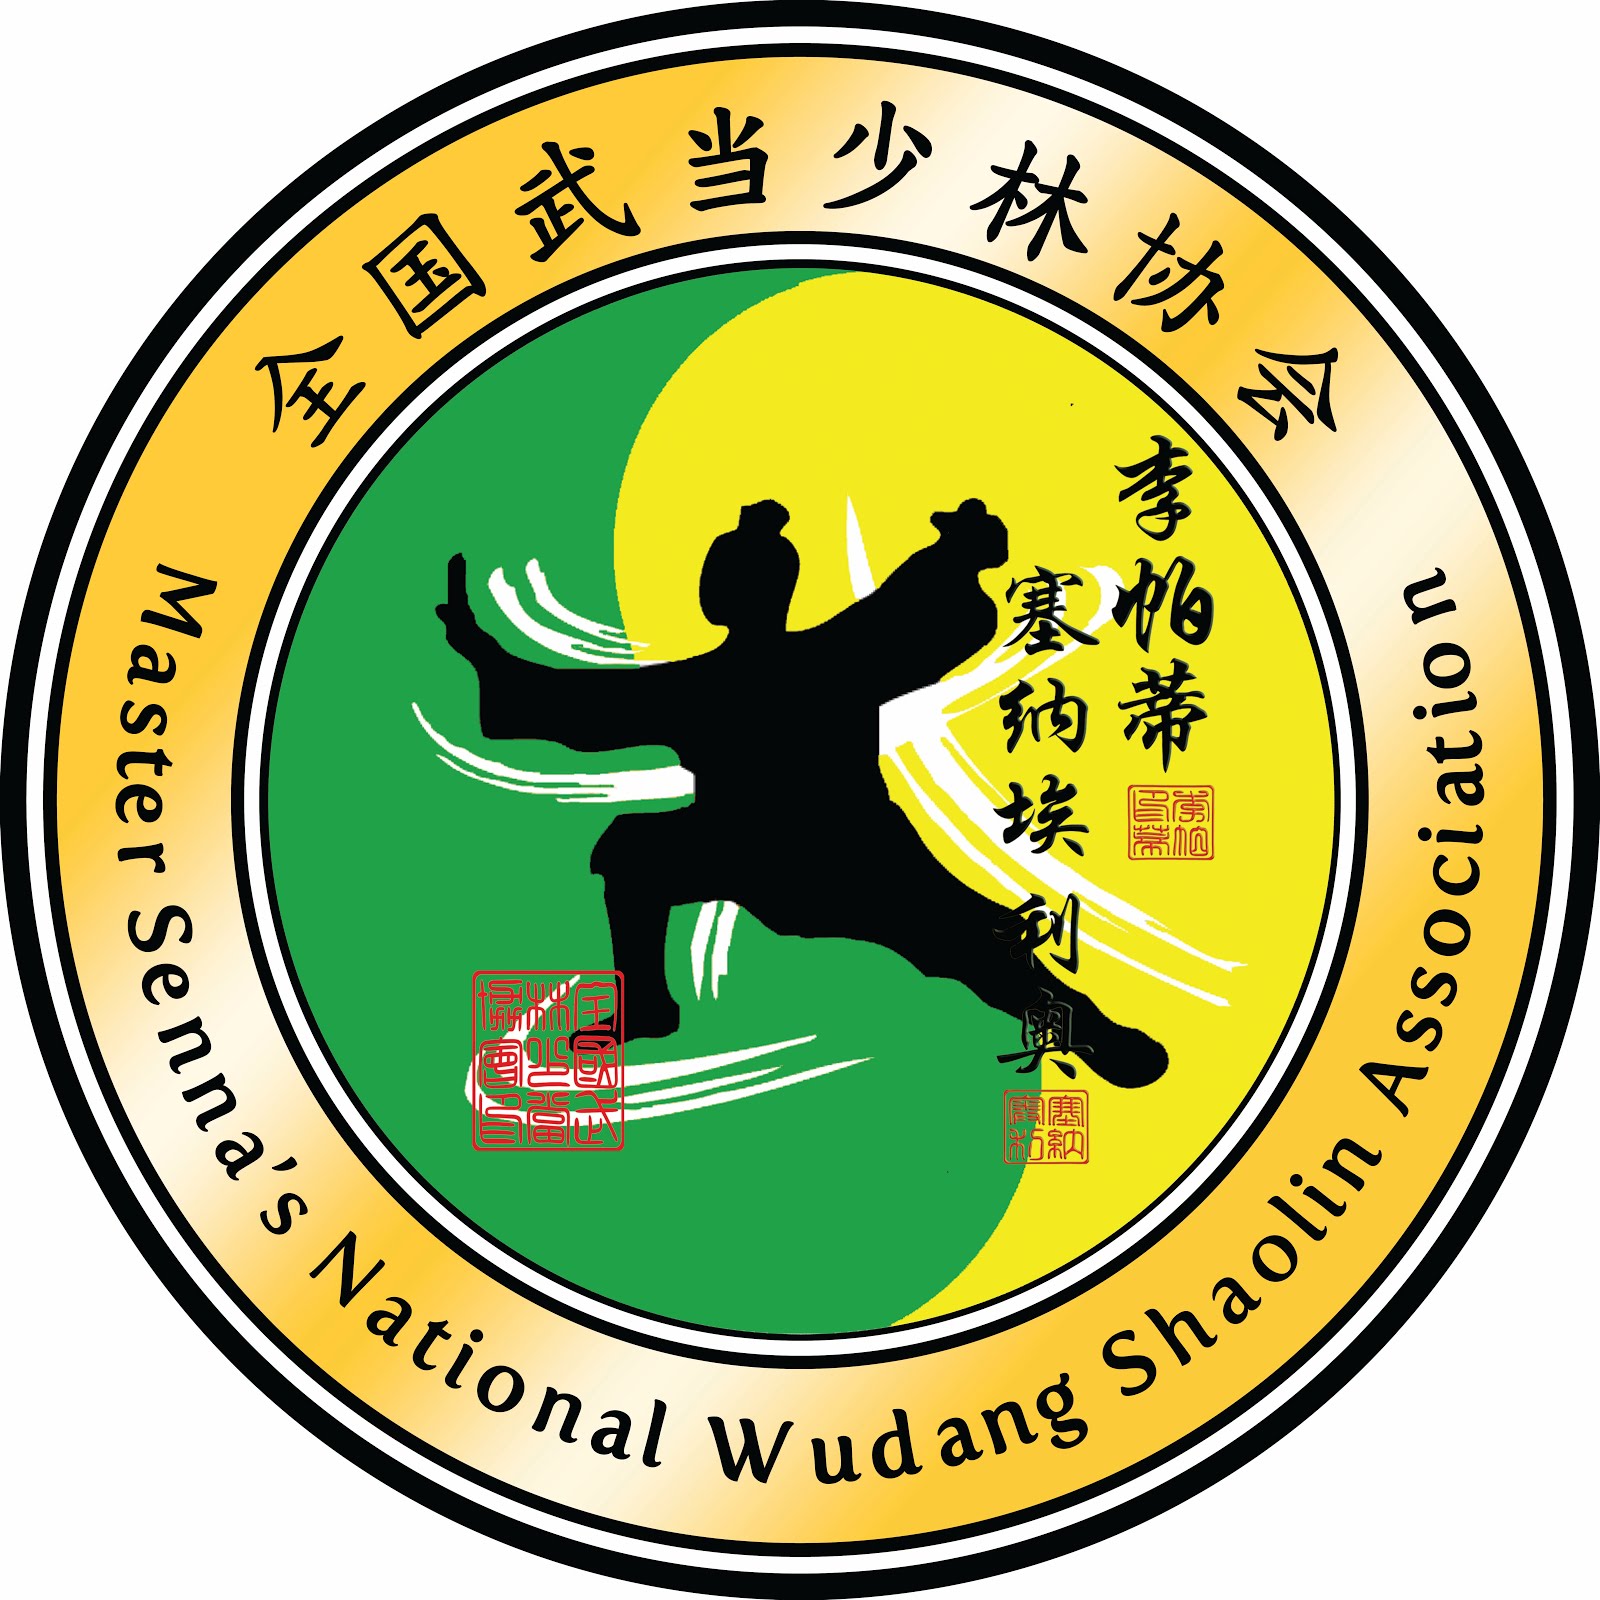 Shaolin and  Wudang Styles Of Kung Fu